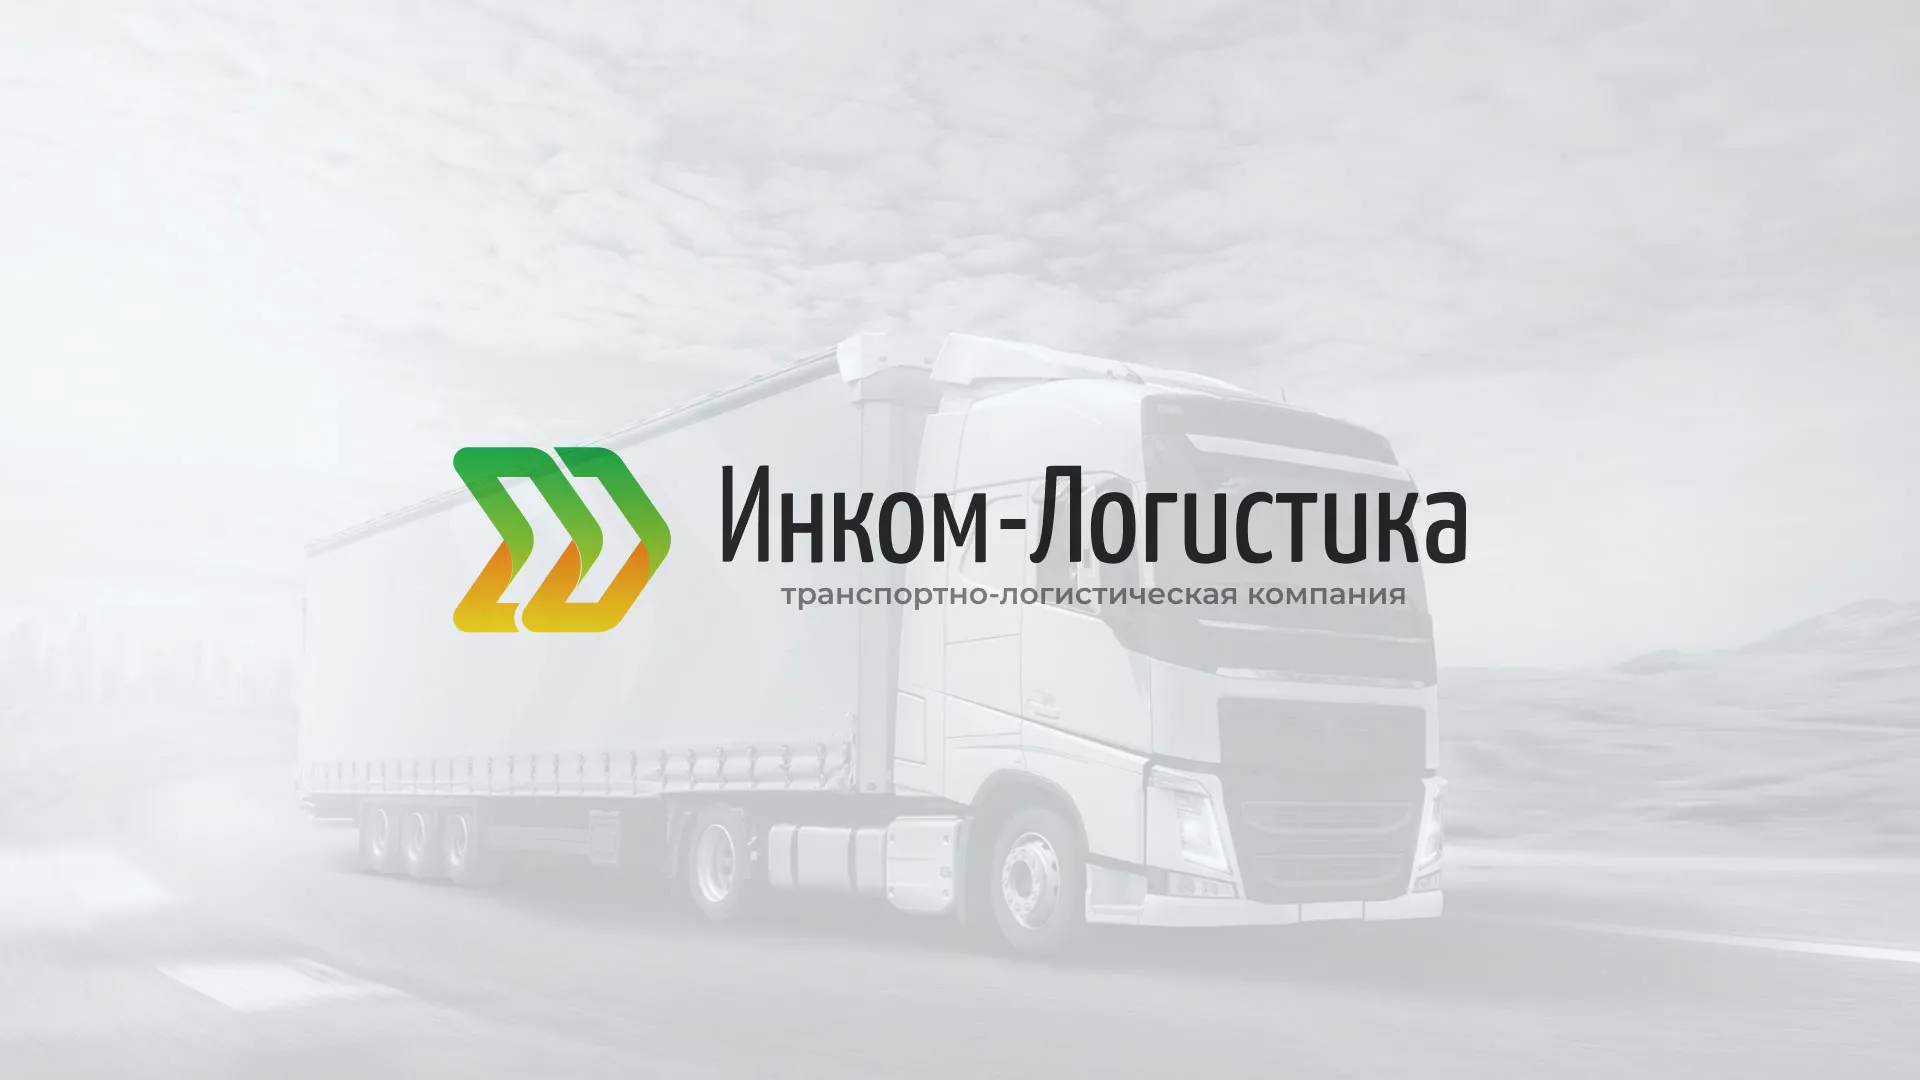 Разработка логотипа и сайта компании «Инком-Логистика» в Южно-Сахалинске